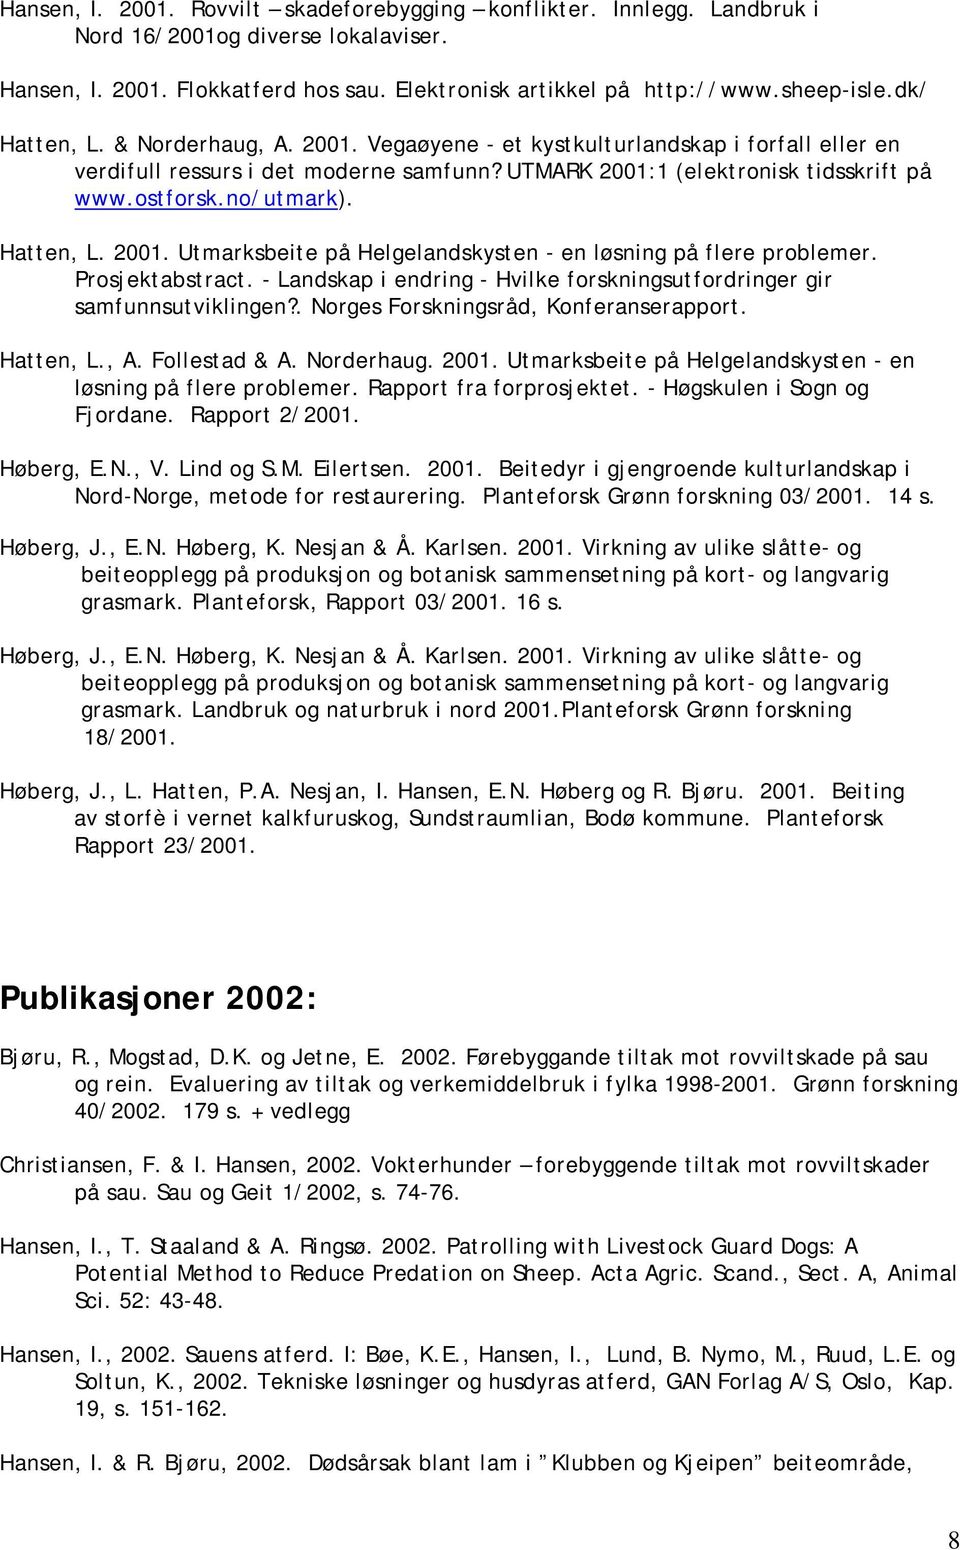 Hatten, L. 2001. Utmarksbeite på Helgelandskysten - en løsning på flere problemer. Prosjektabstract. - Landskap i endring - Hvilke forskningsutfordringer gir samfunnsutviklingen?